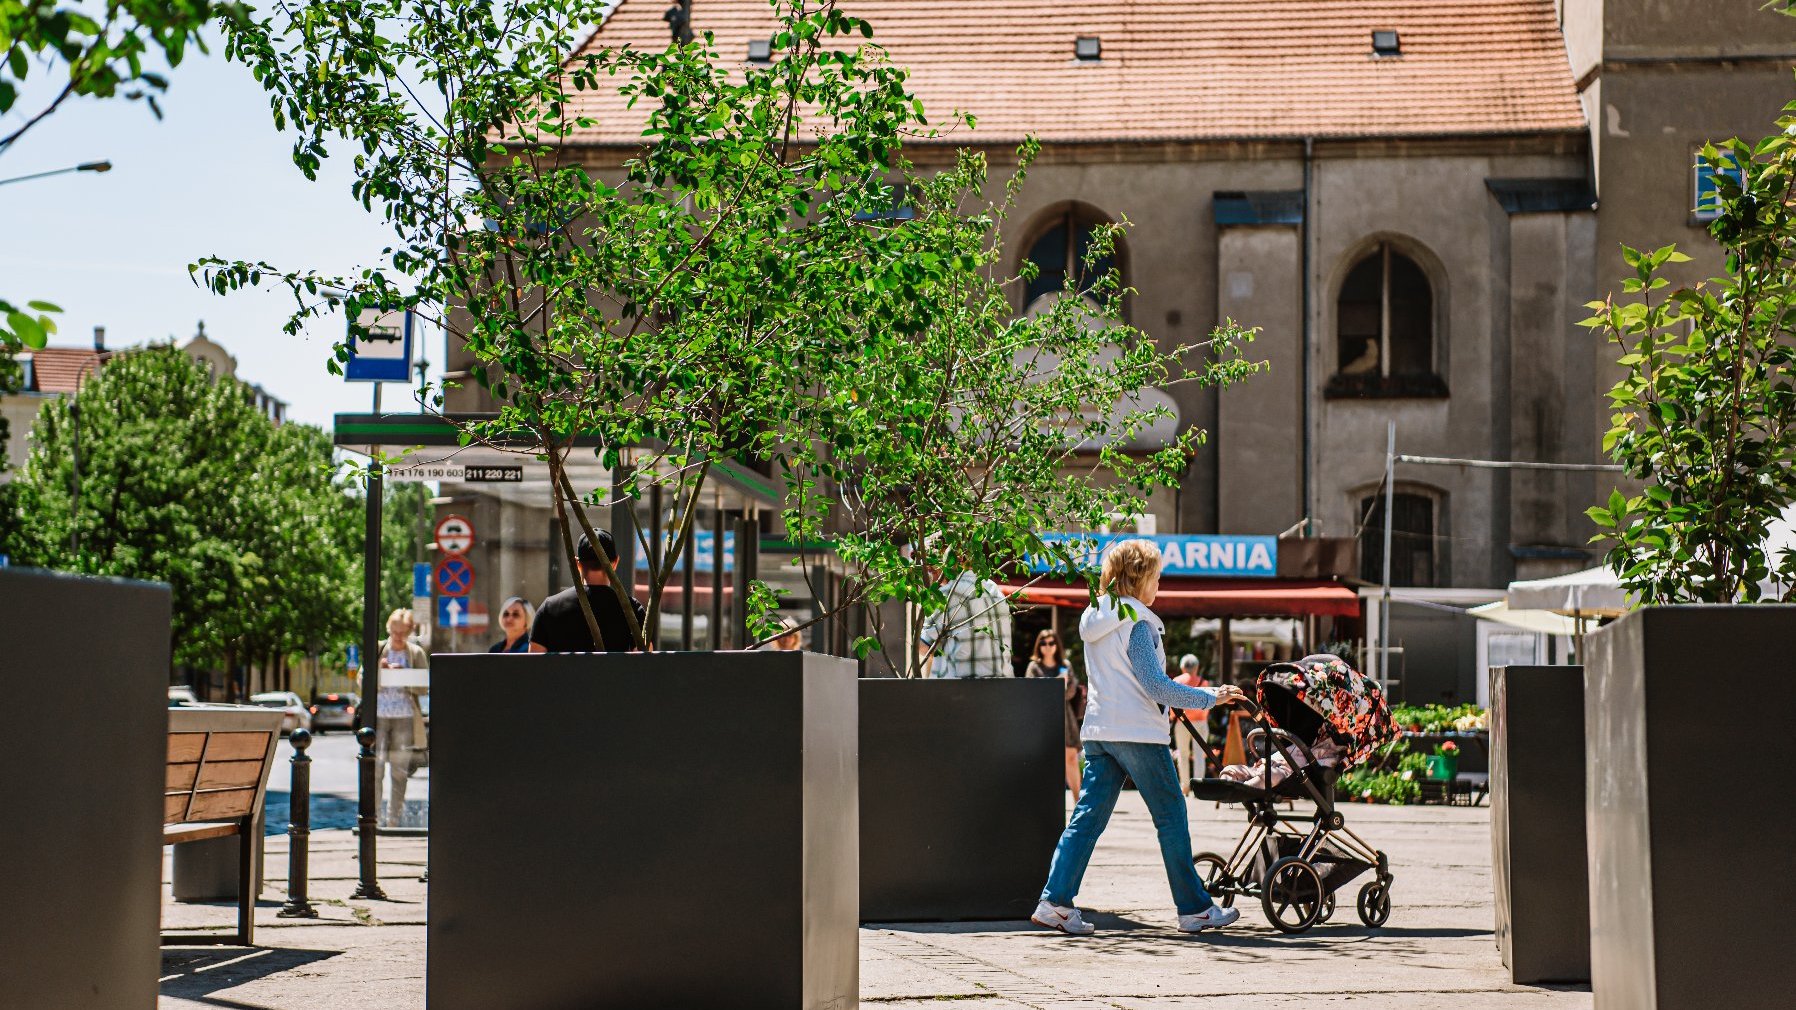 Galeria zdjęć przedstawia plac Bernardyński. Widać na nich donice z roślinami oraz stragany handlowe.